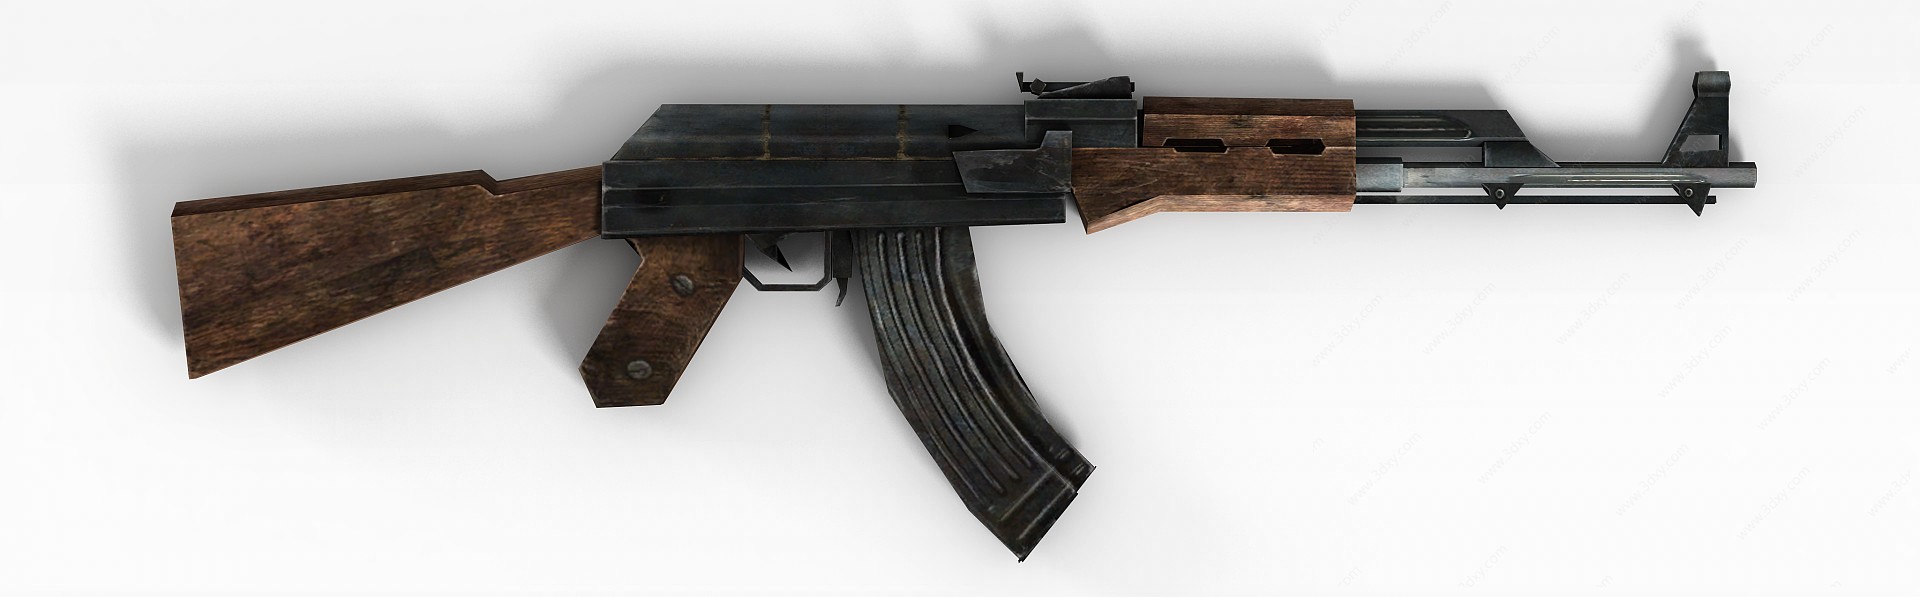 AK-47冲锋枪3D模型